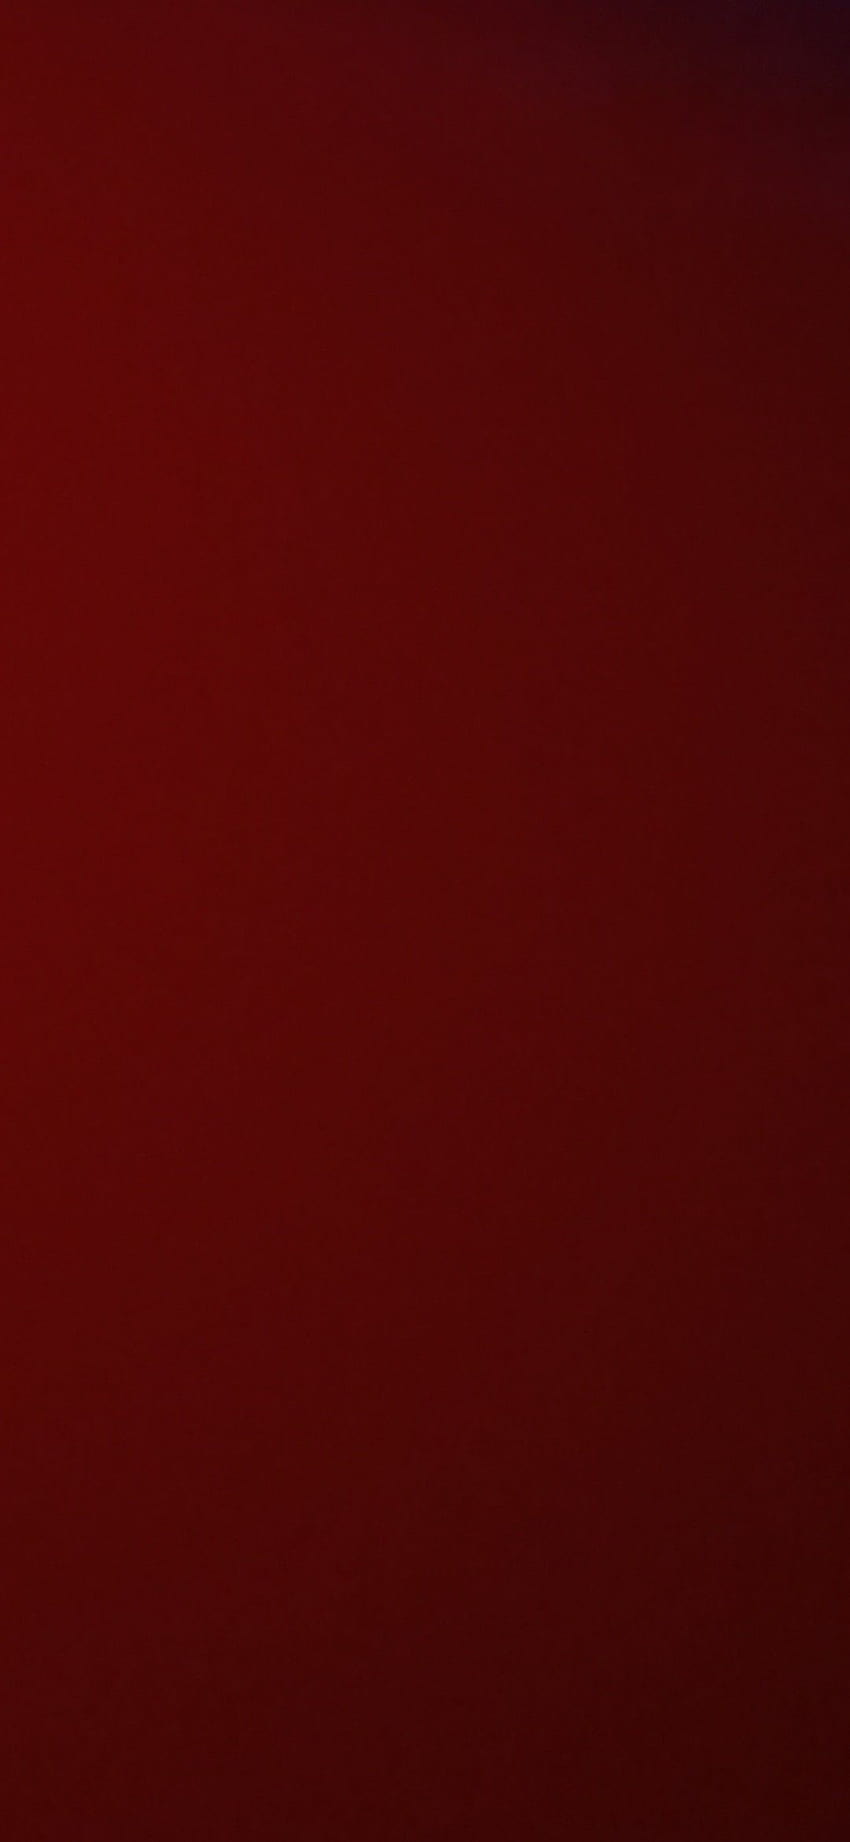 Dark red HD wallpapers  Pxfuel